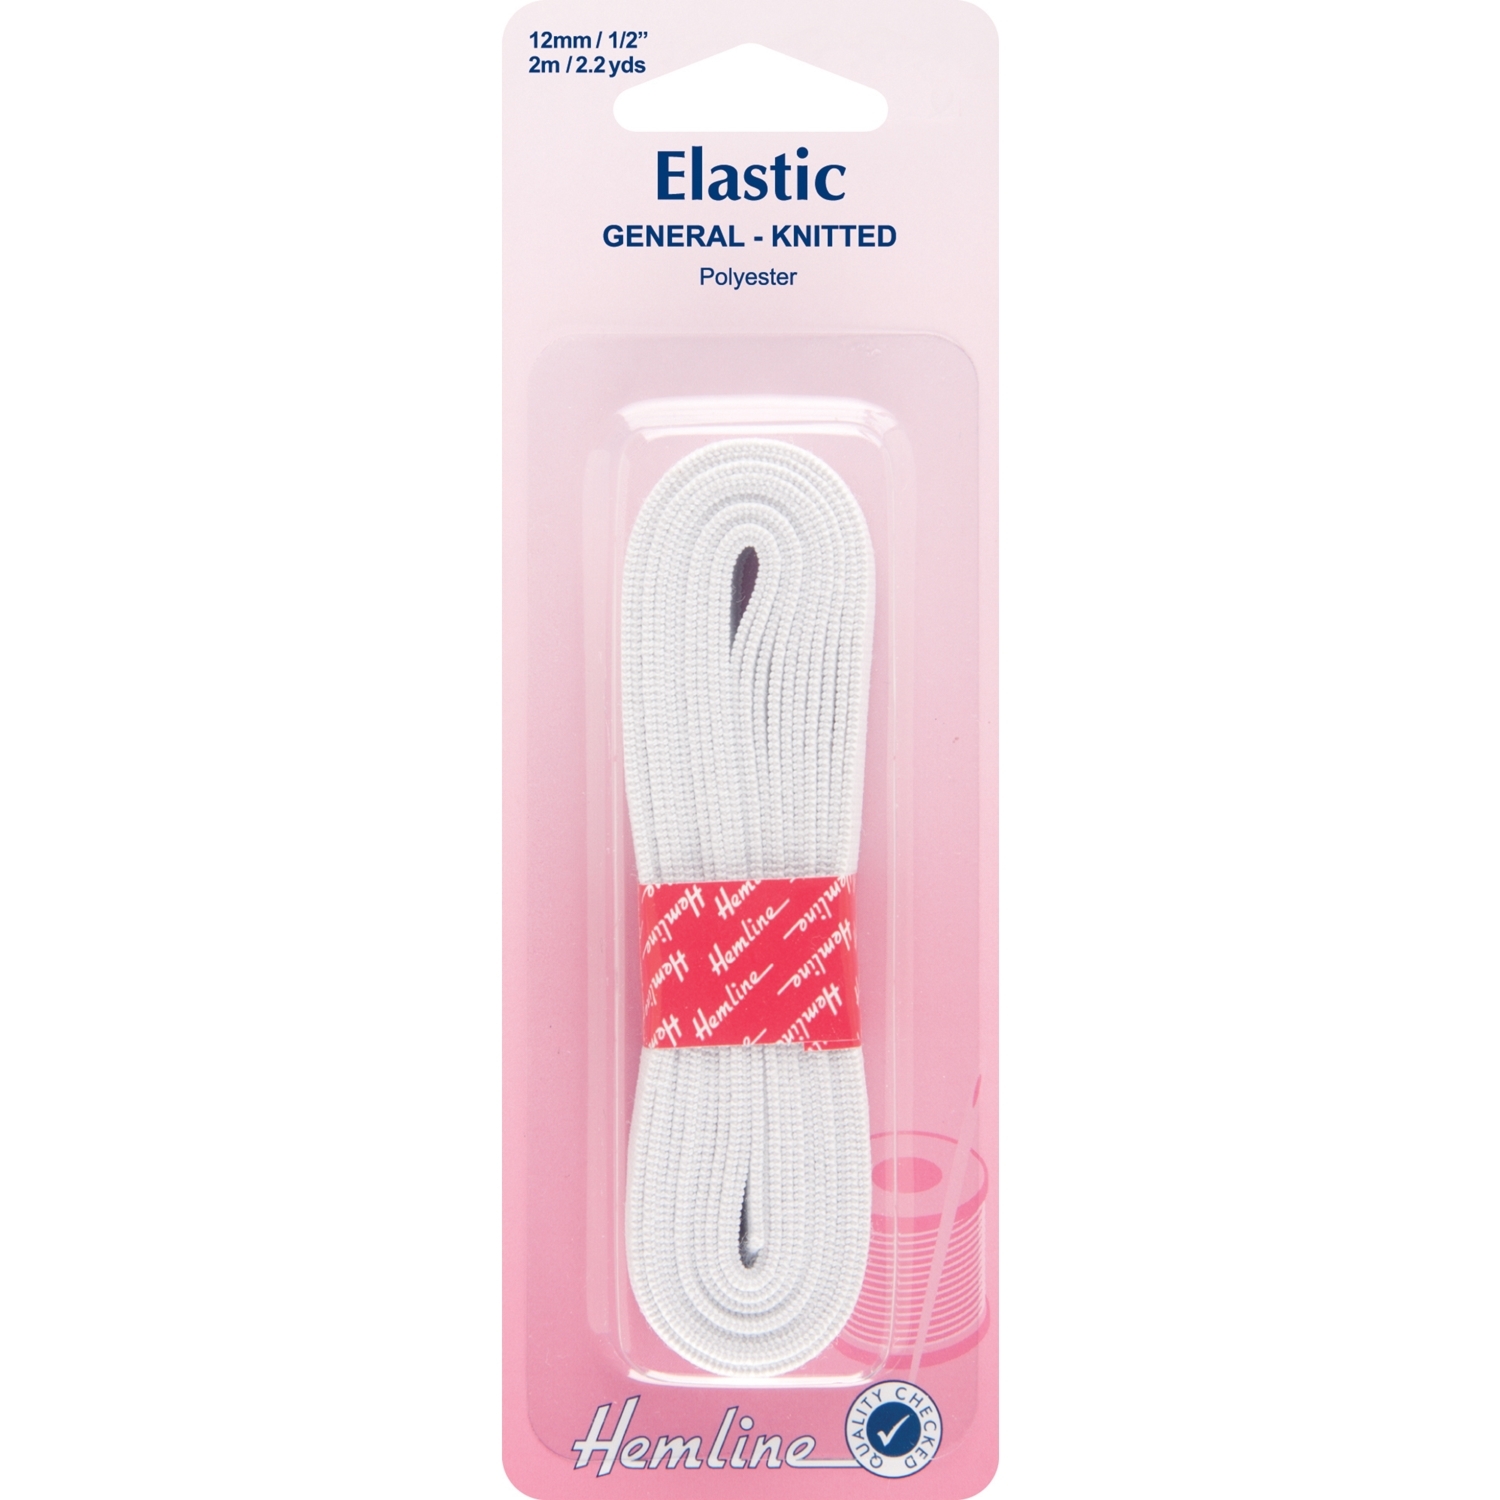 Hemline Elastic - Knitted White / 1.2cm Image